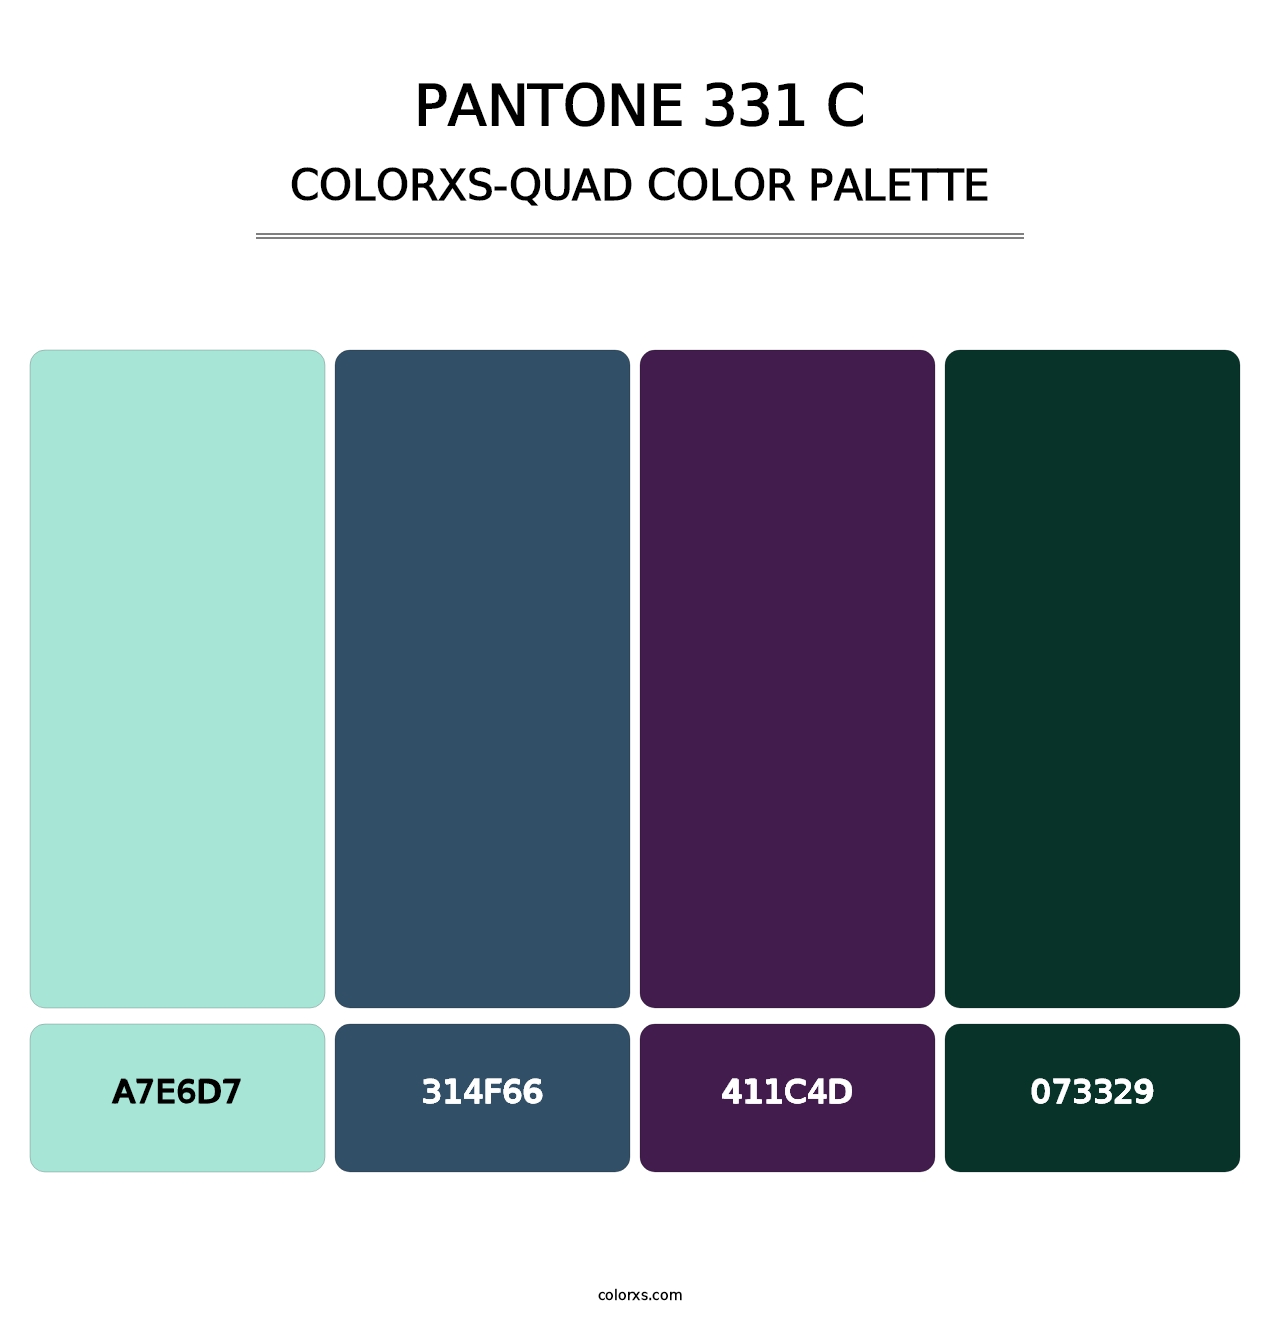 PANTONE 331 C - Colorxs Quad Palette